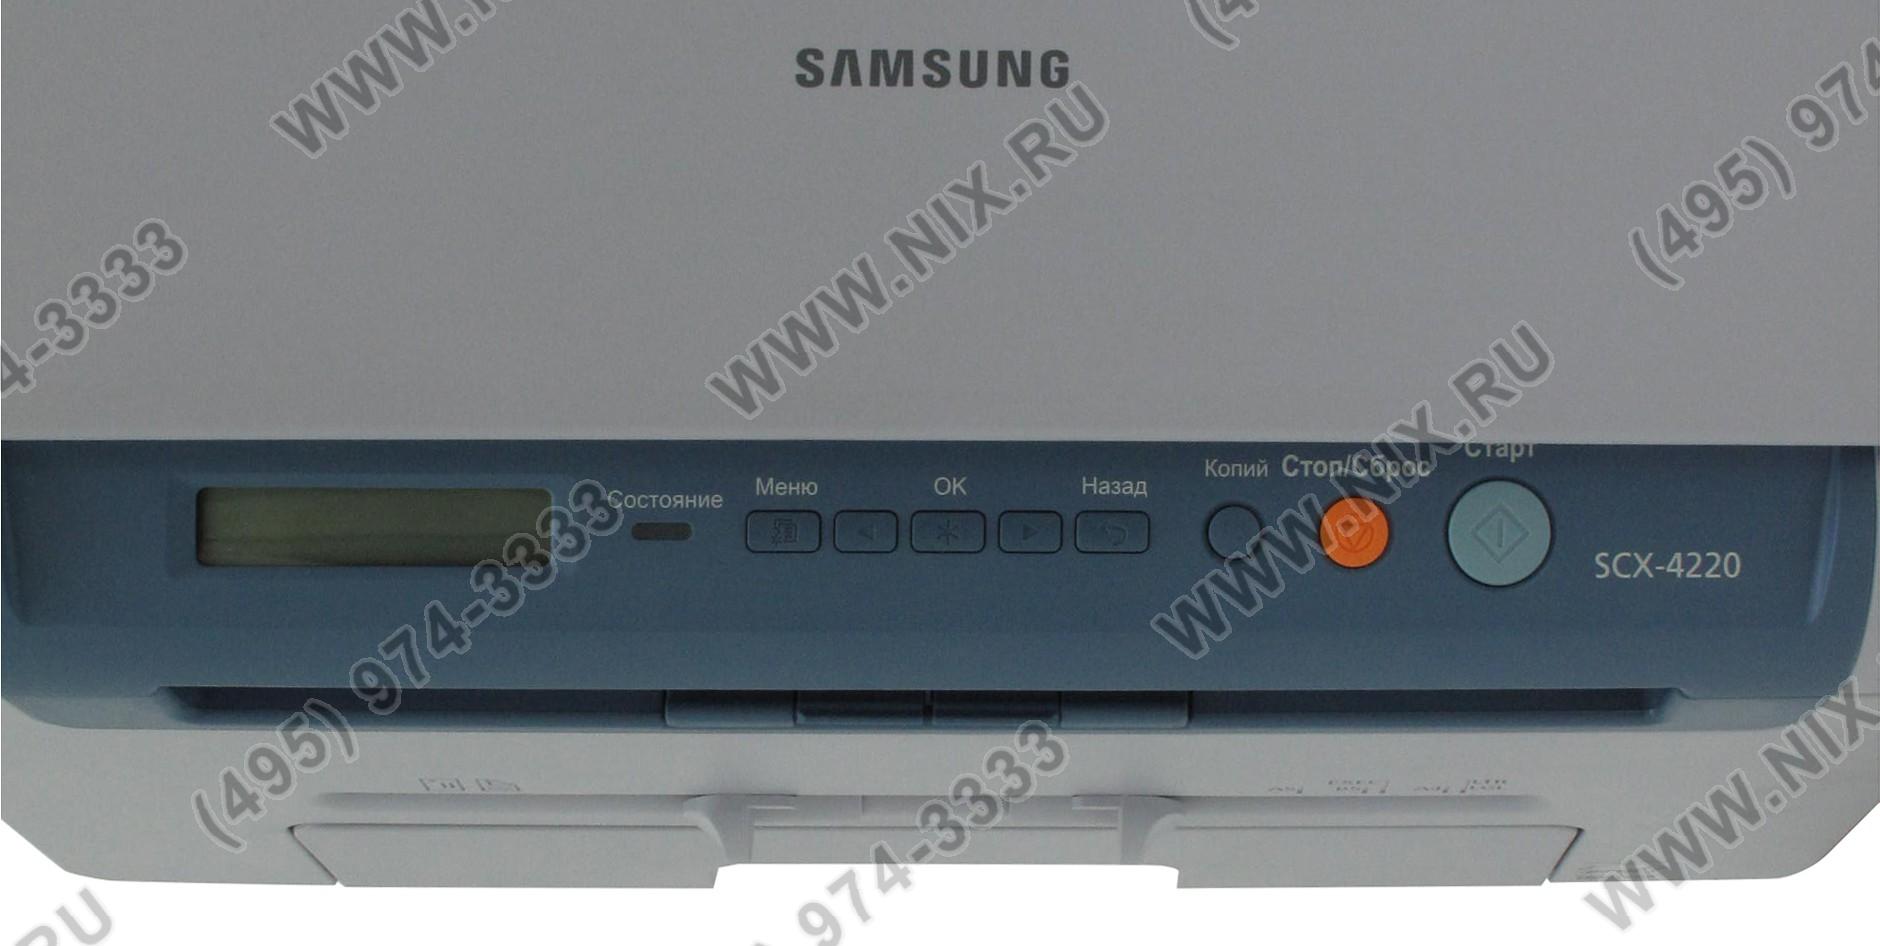 SCX-4220 плата панели управления. SCX 4220. Samsung 4220. Samsung SCX 4220. Samsung 4220 windows 10